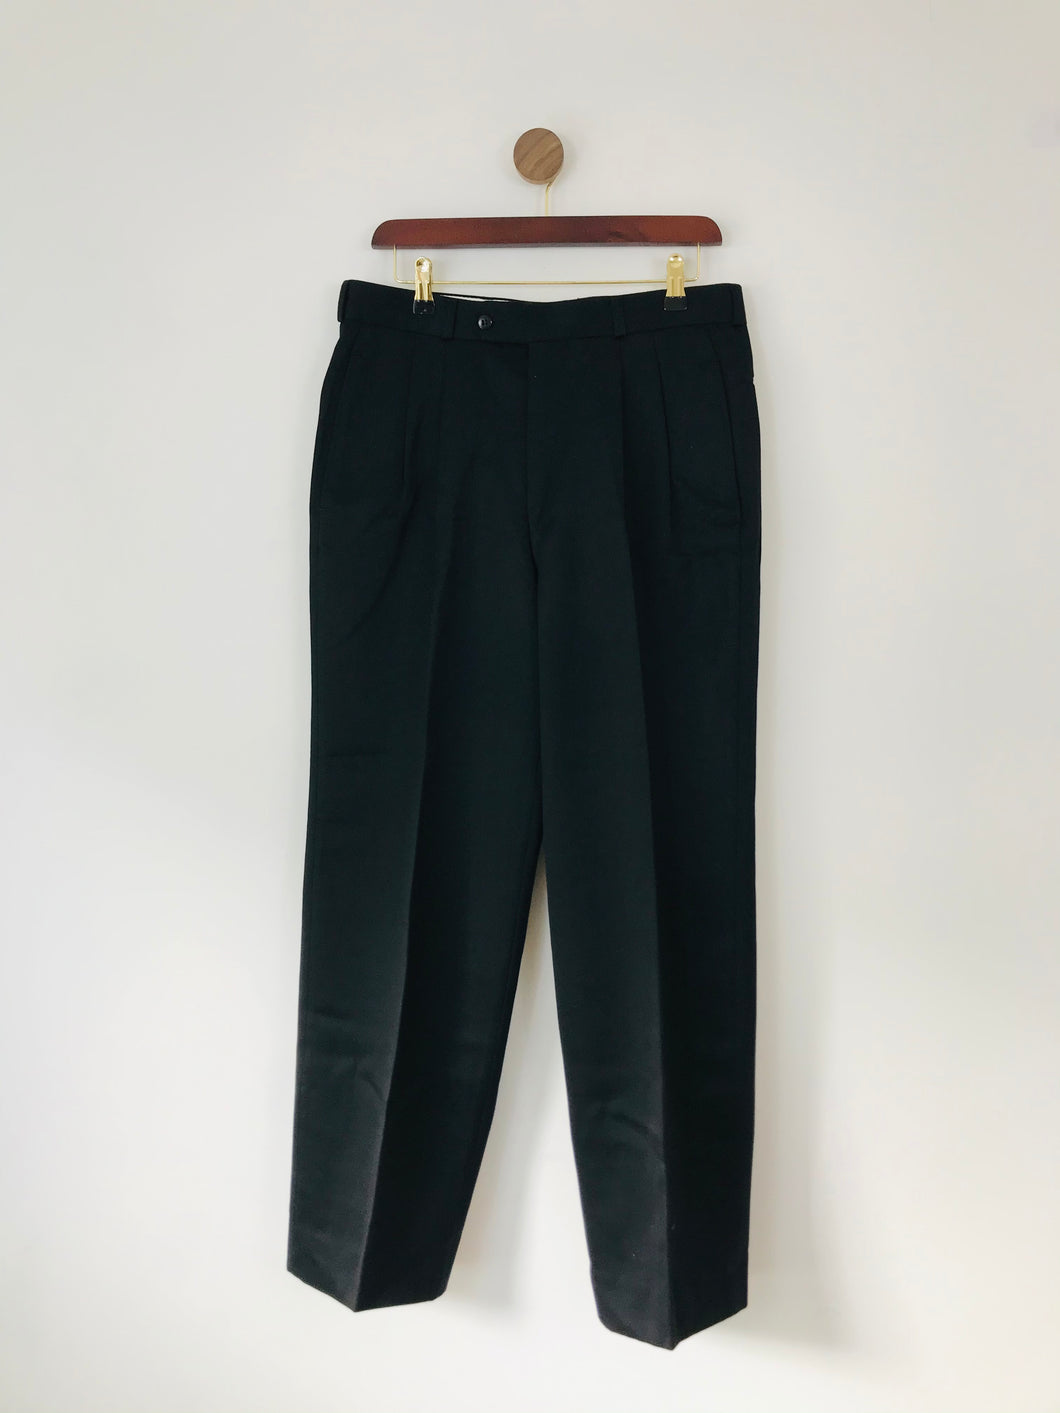 Hugo Boss Men’s Wool Suit Trousers | 4 W32 L30 | Black